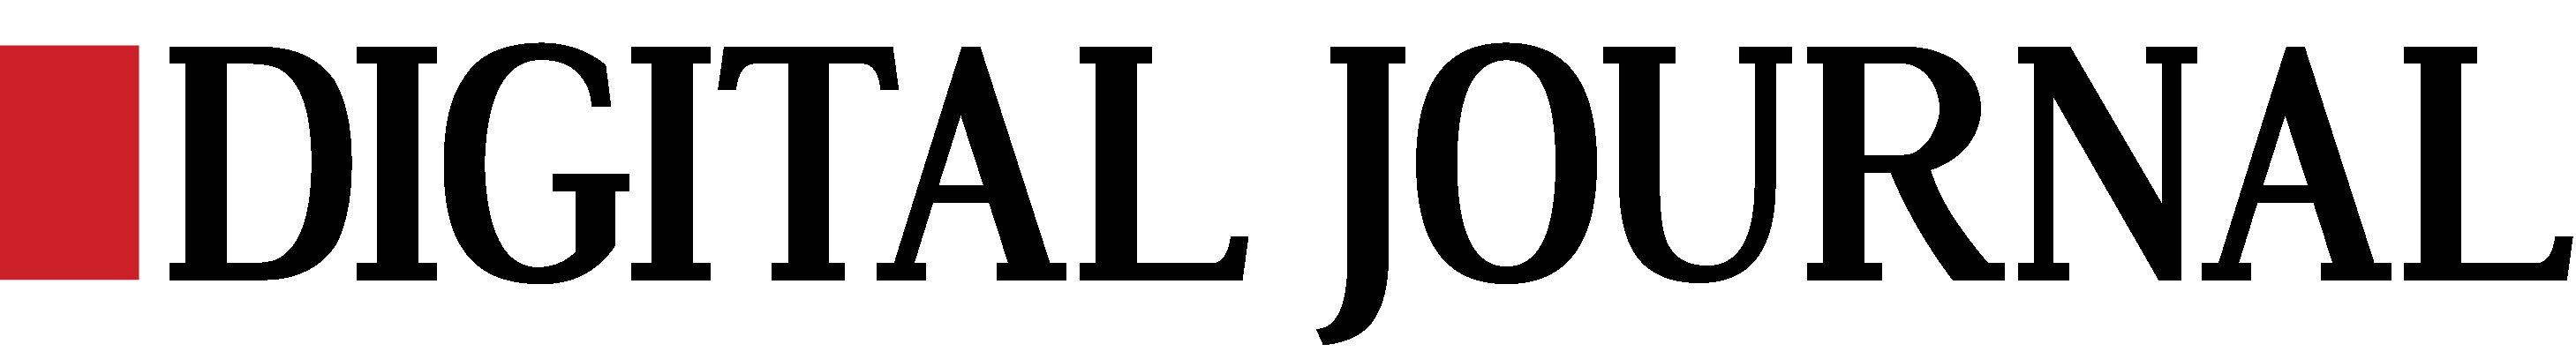 Digital Journal Logo - Black.png